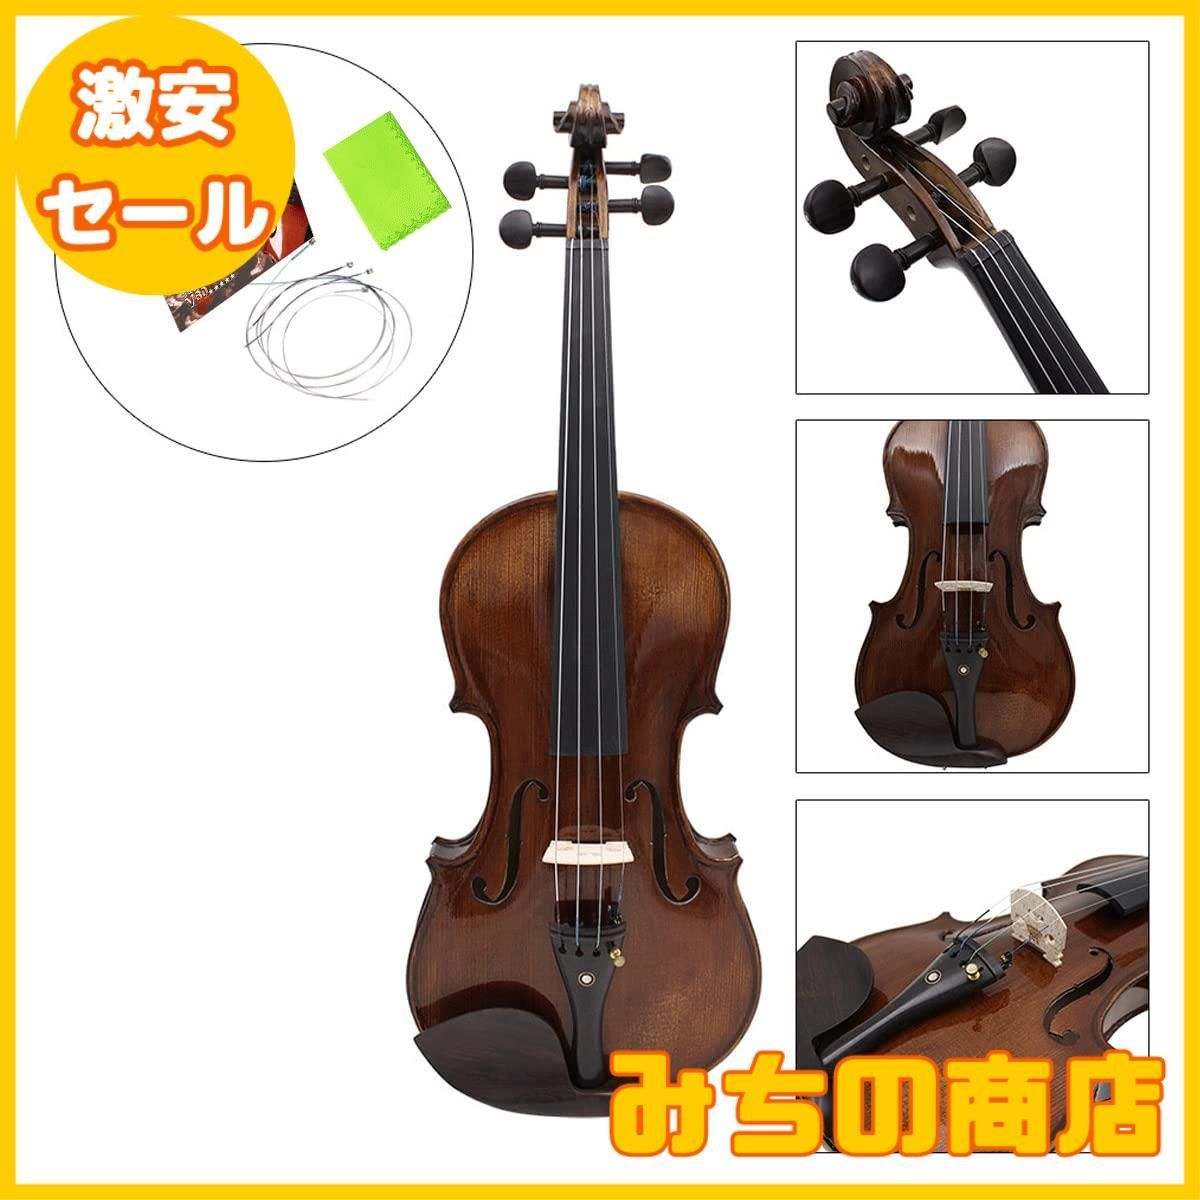 【数量限定】JYsun  バイオリン弦3フルセットE-A-D-Gステンレス鋼コアニッケルメッキボールエンドニッケルクロム楽器用1ピースクリーニングクロス付き